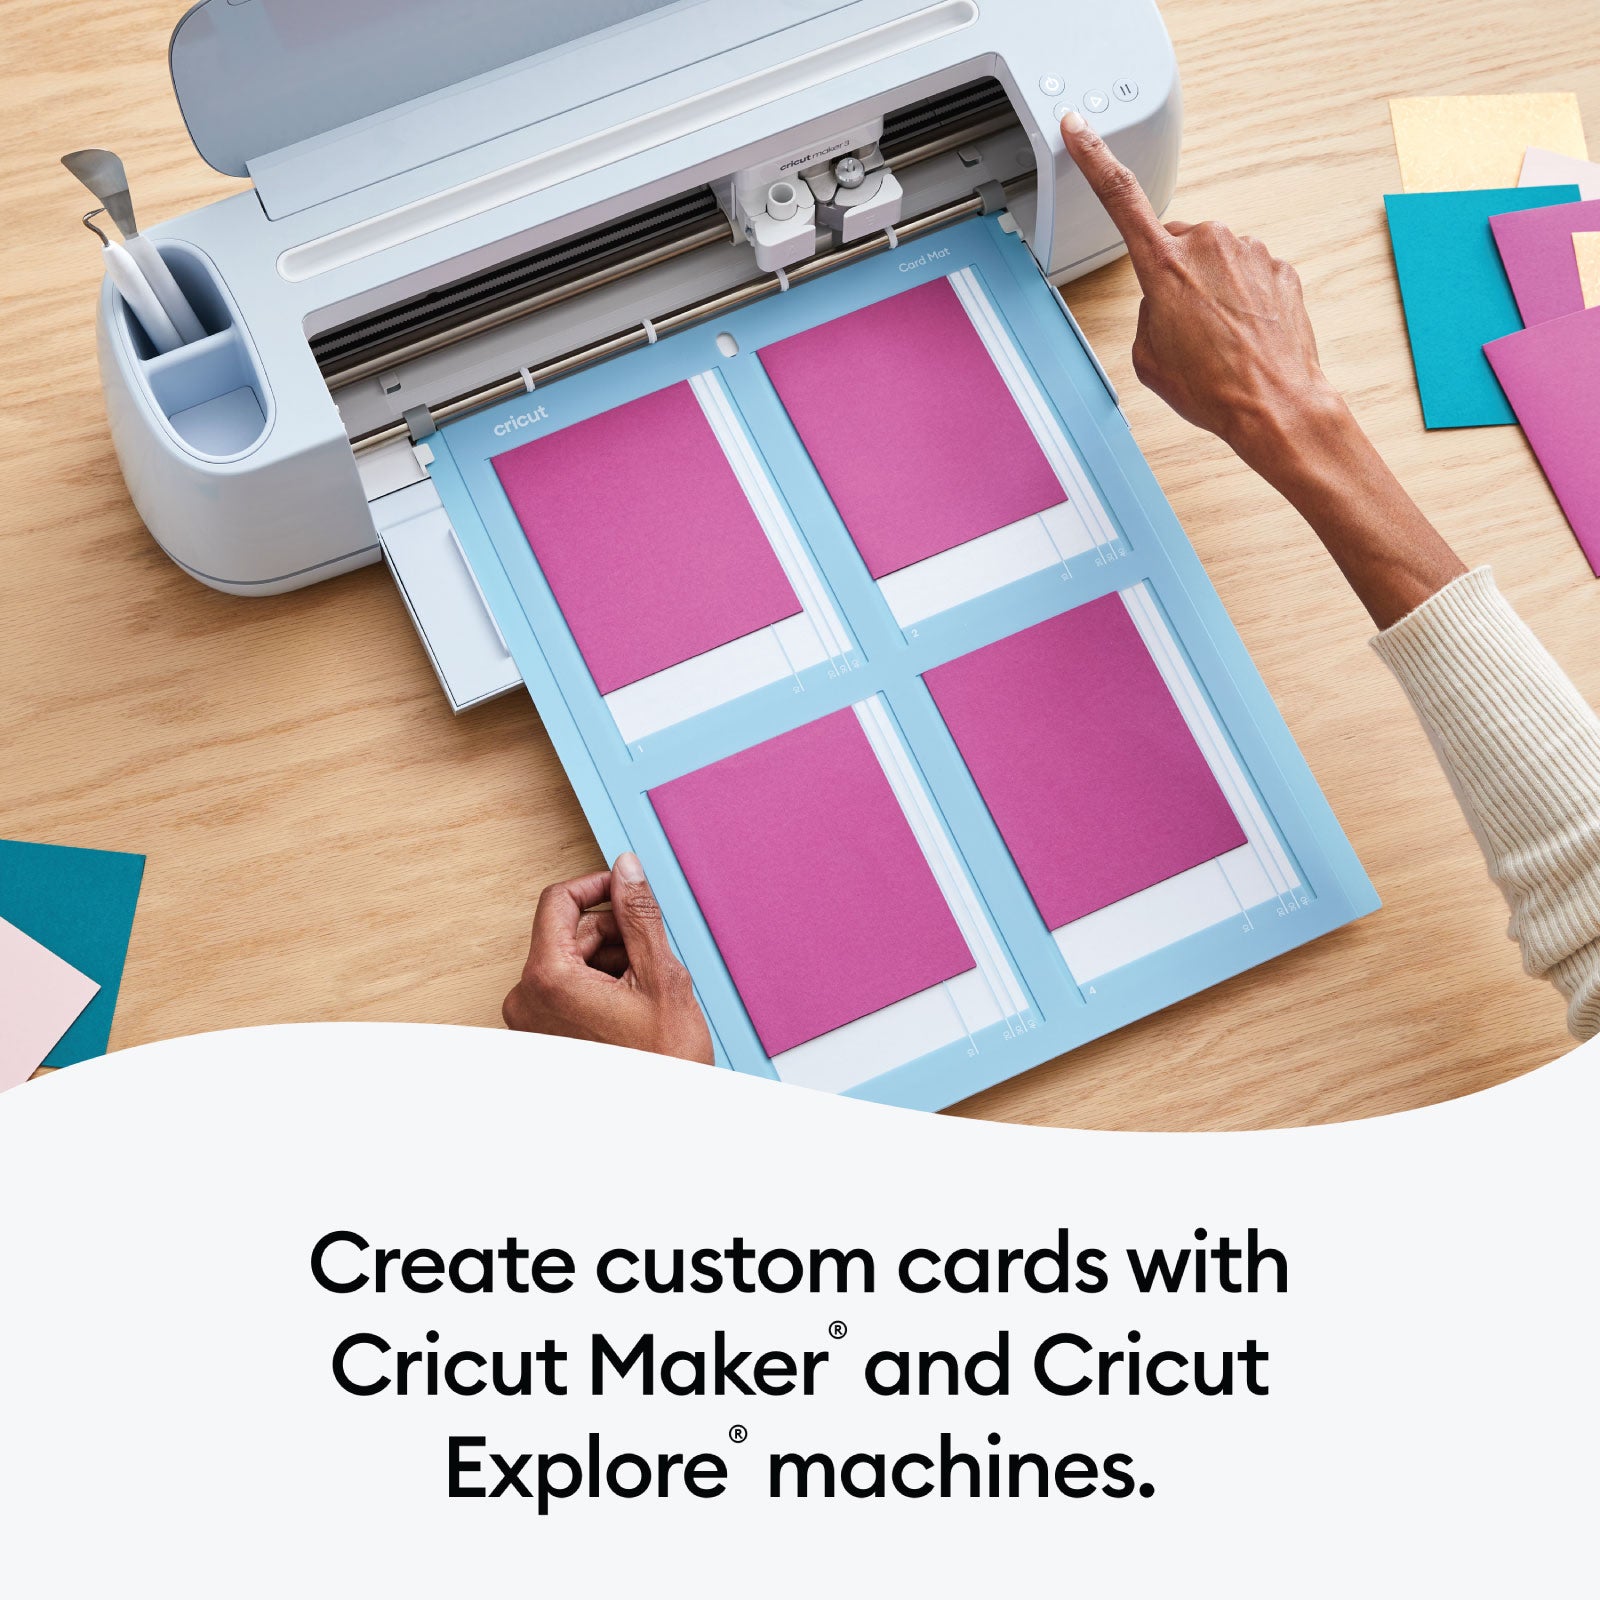 Cricut Cutaway Cards Marina Sampler Double Pack with Cricut Card Mat 2x2 Bundle